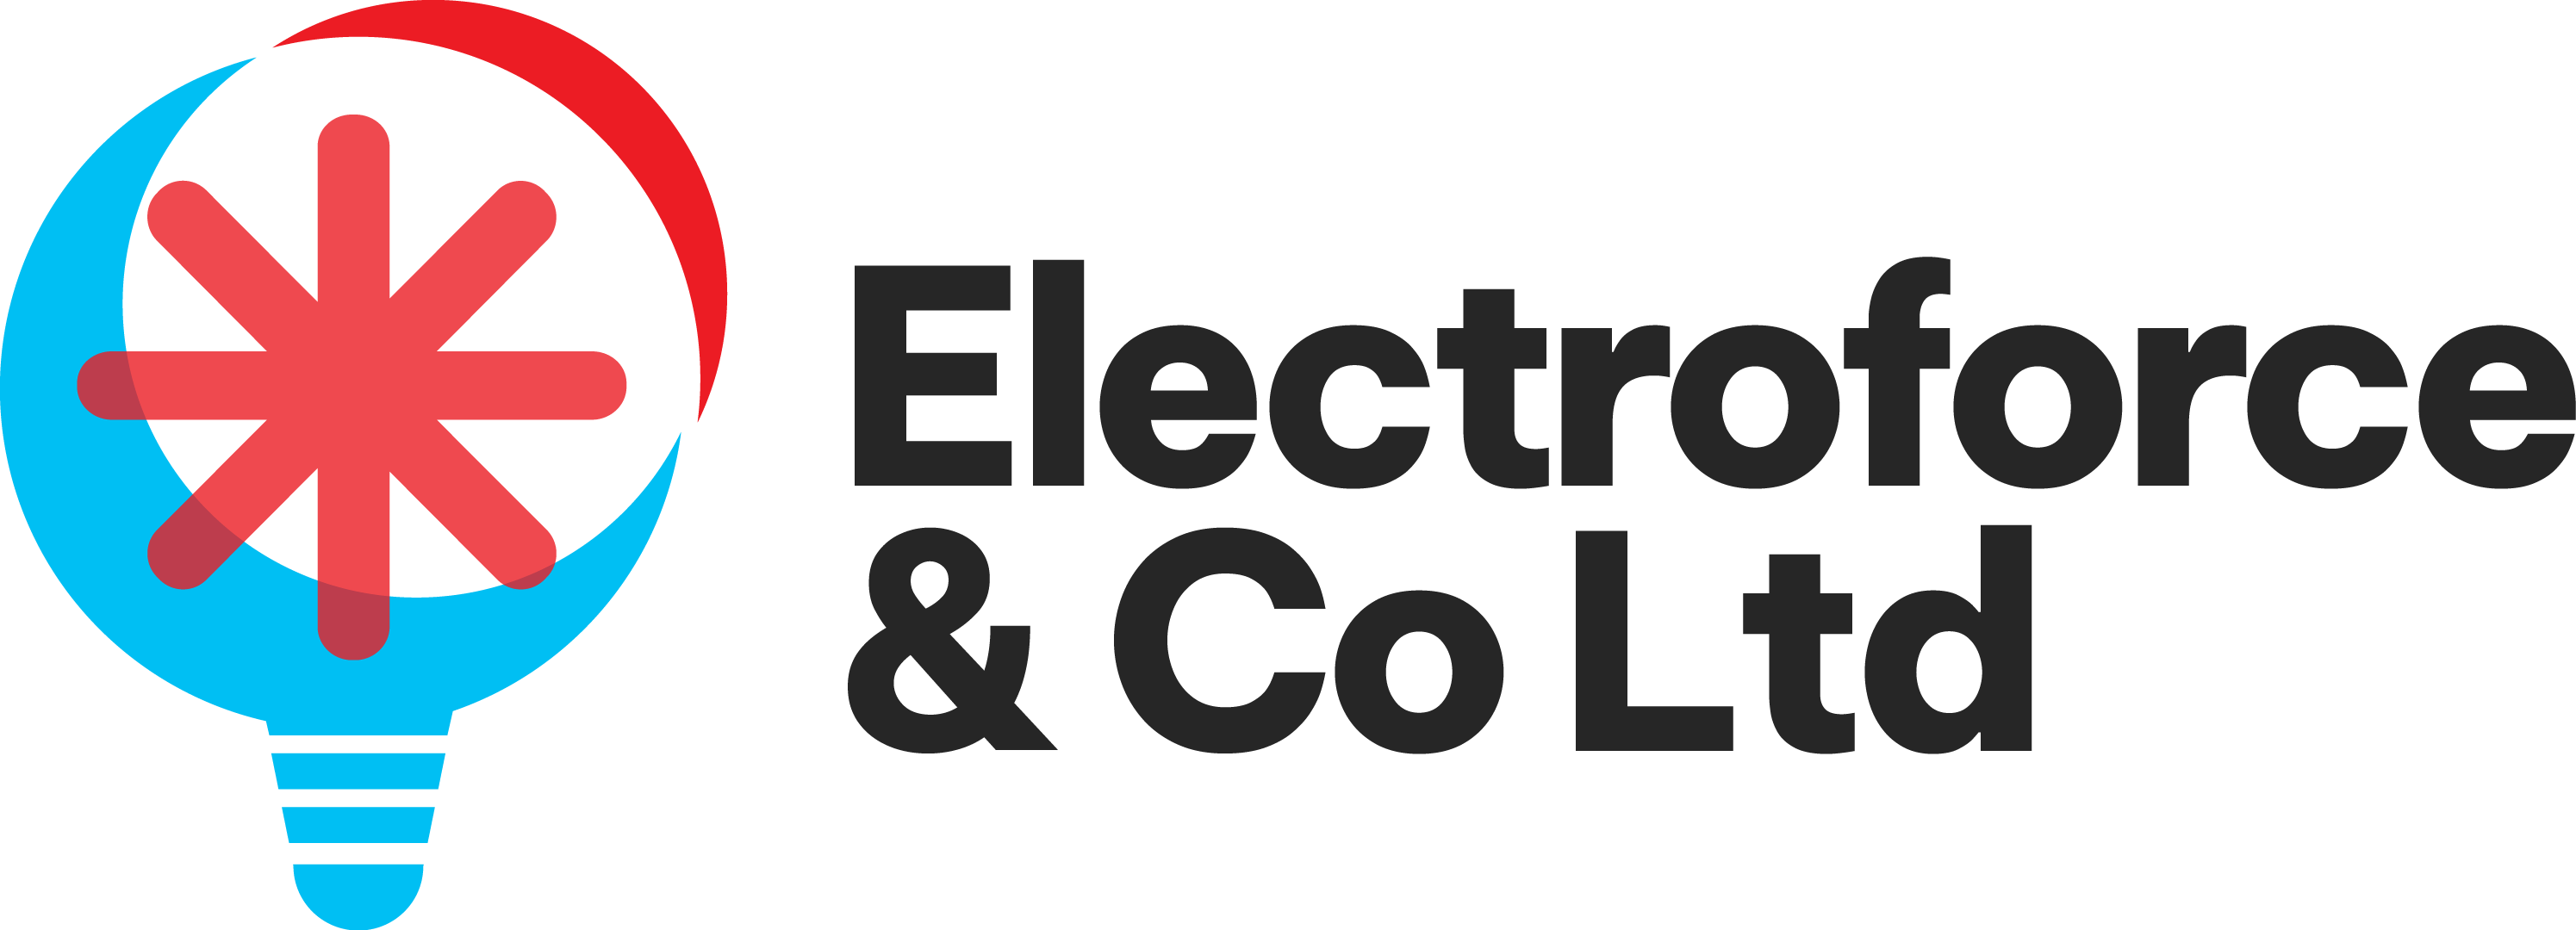 Electricians in West Lothian